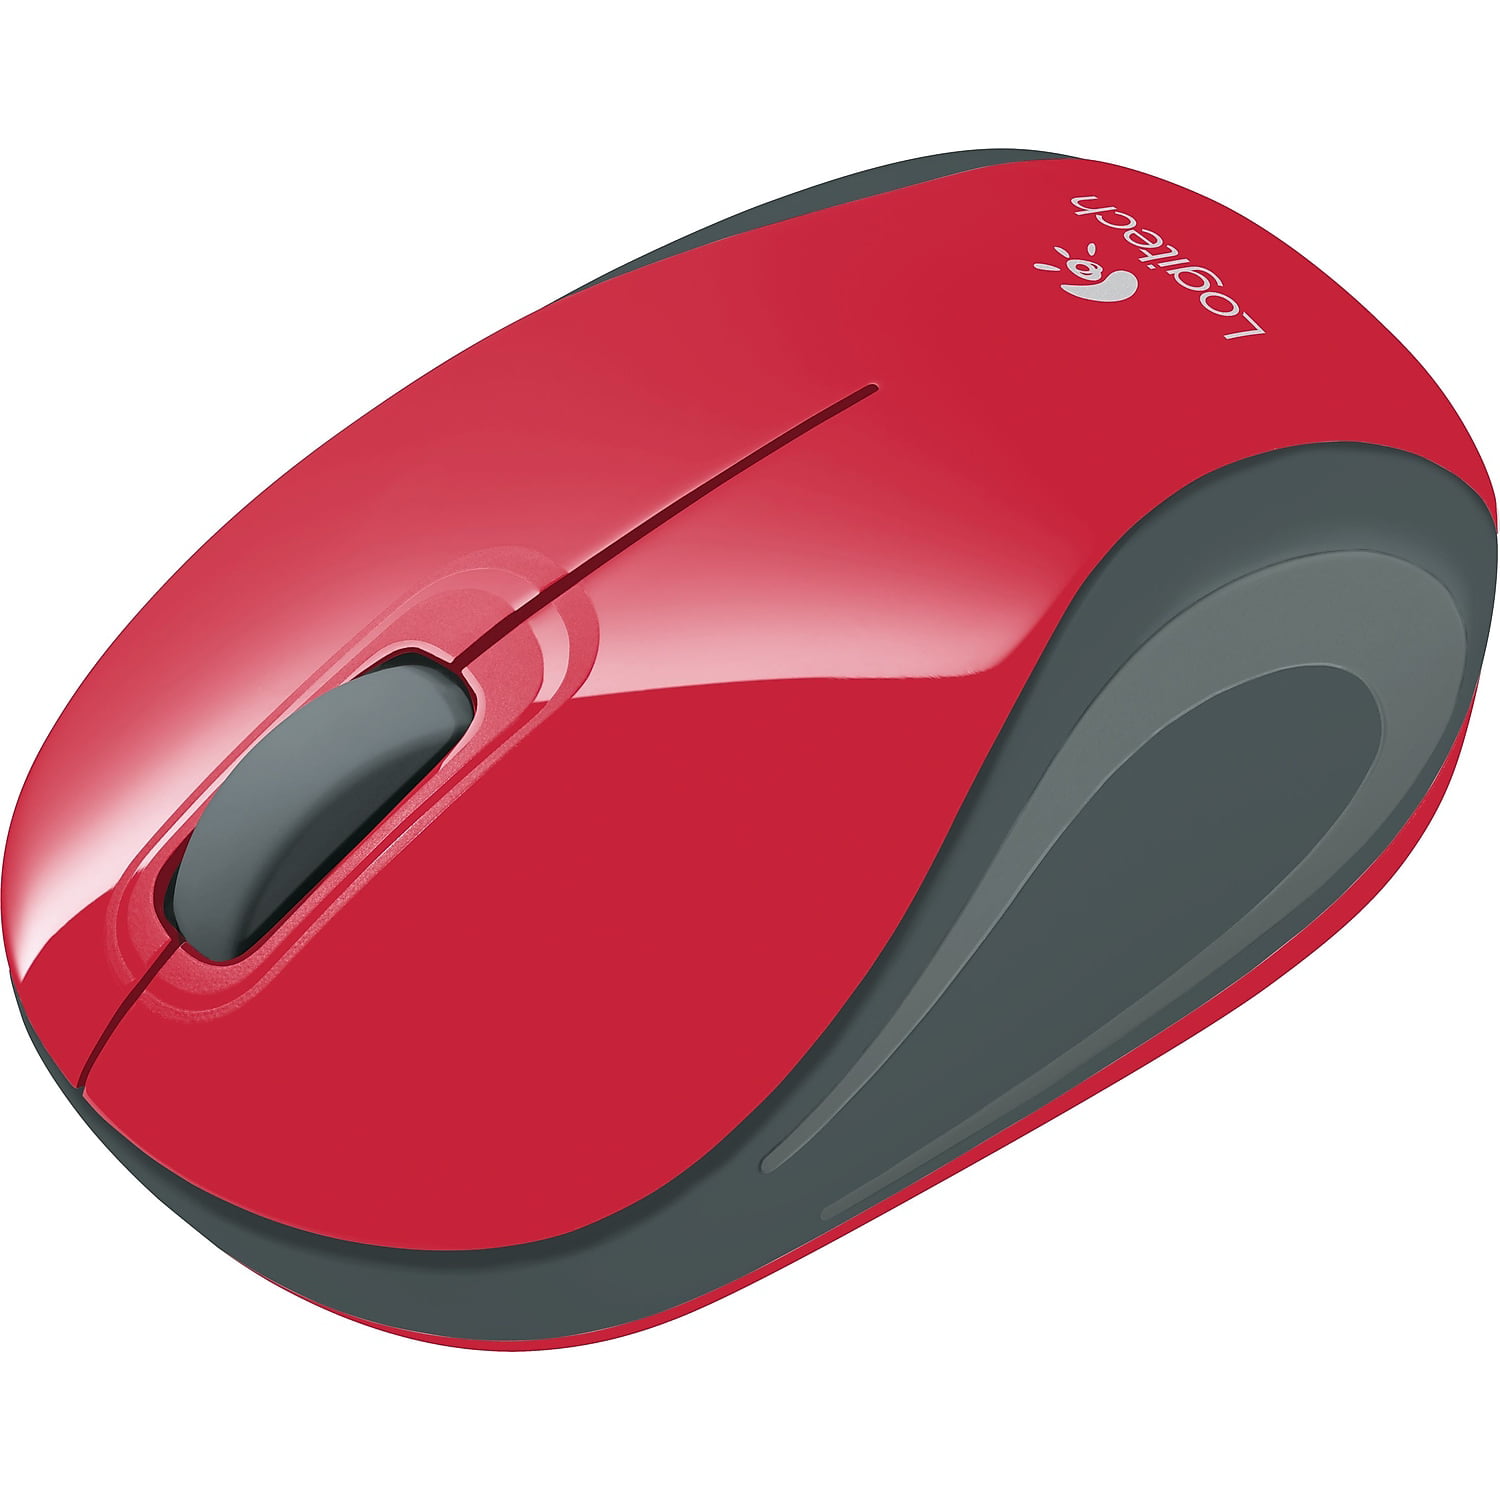 vindruer server Et kors Logitech M187 Wireless Mini Mouse, Red - Walmart.com